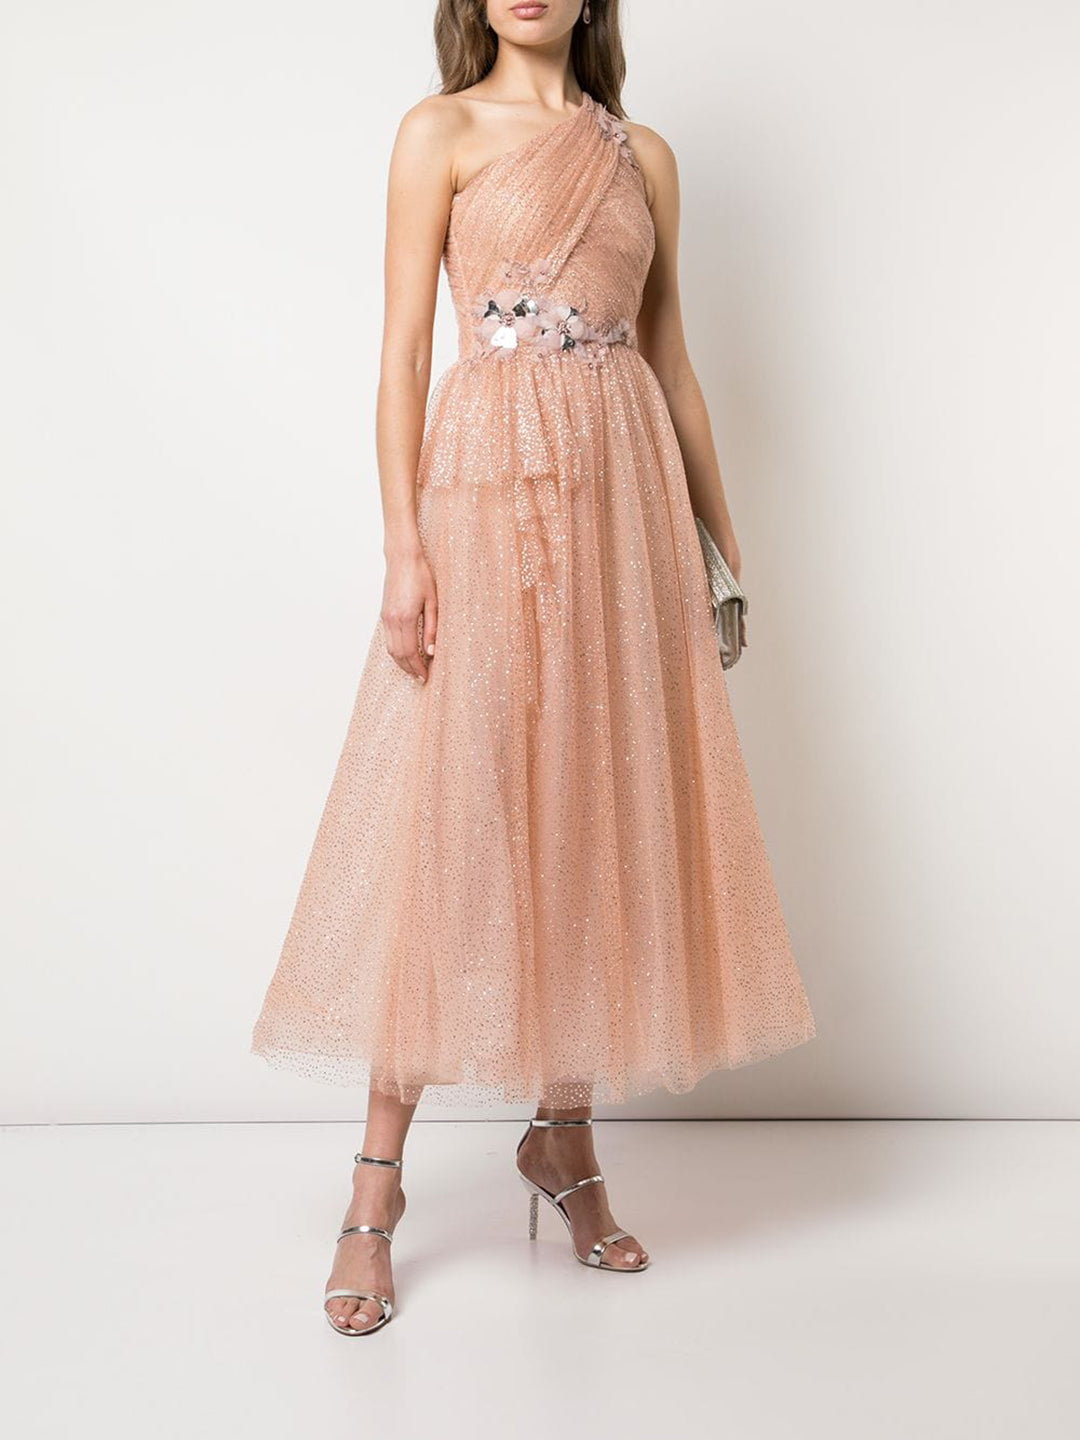 one shoulder glitter tulle dress | Shop ...